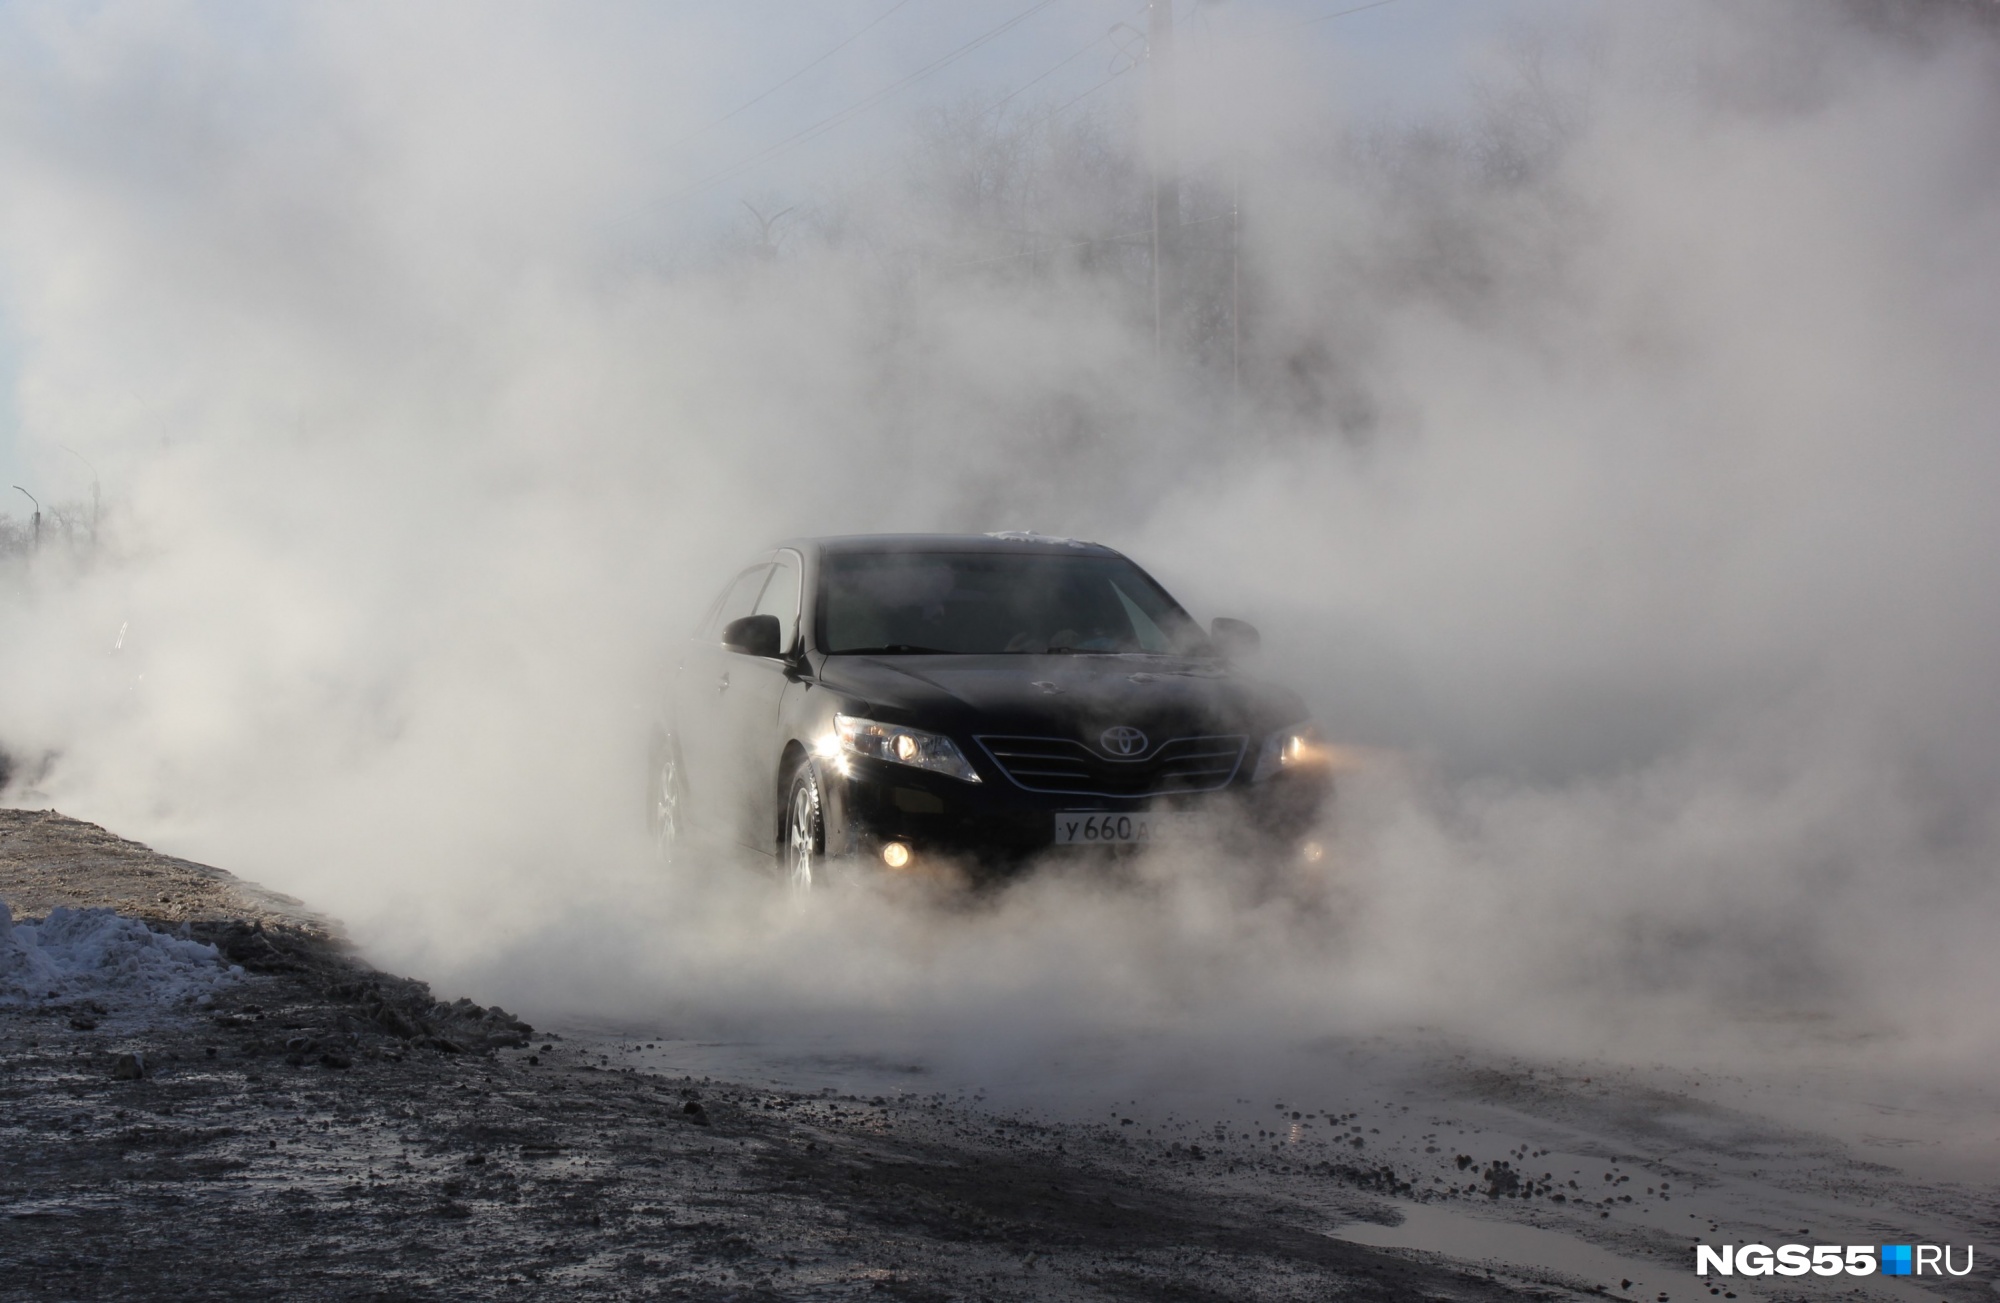 Еду за туманом: фоторепортаж с места порыва трубопровода с горячей водой на 3-й Транспортной